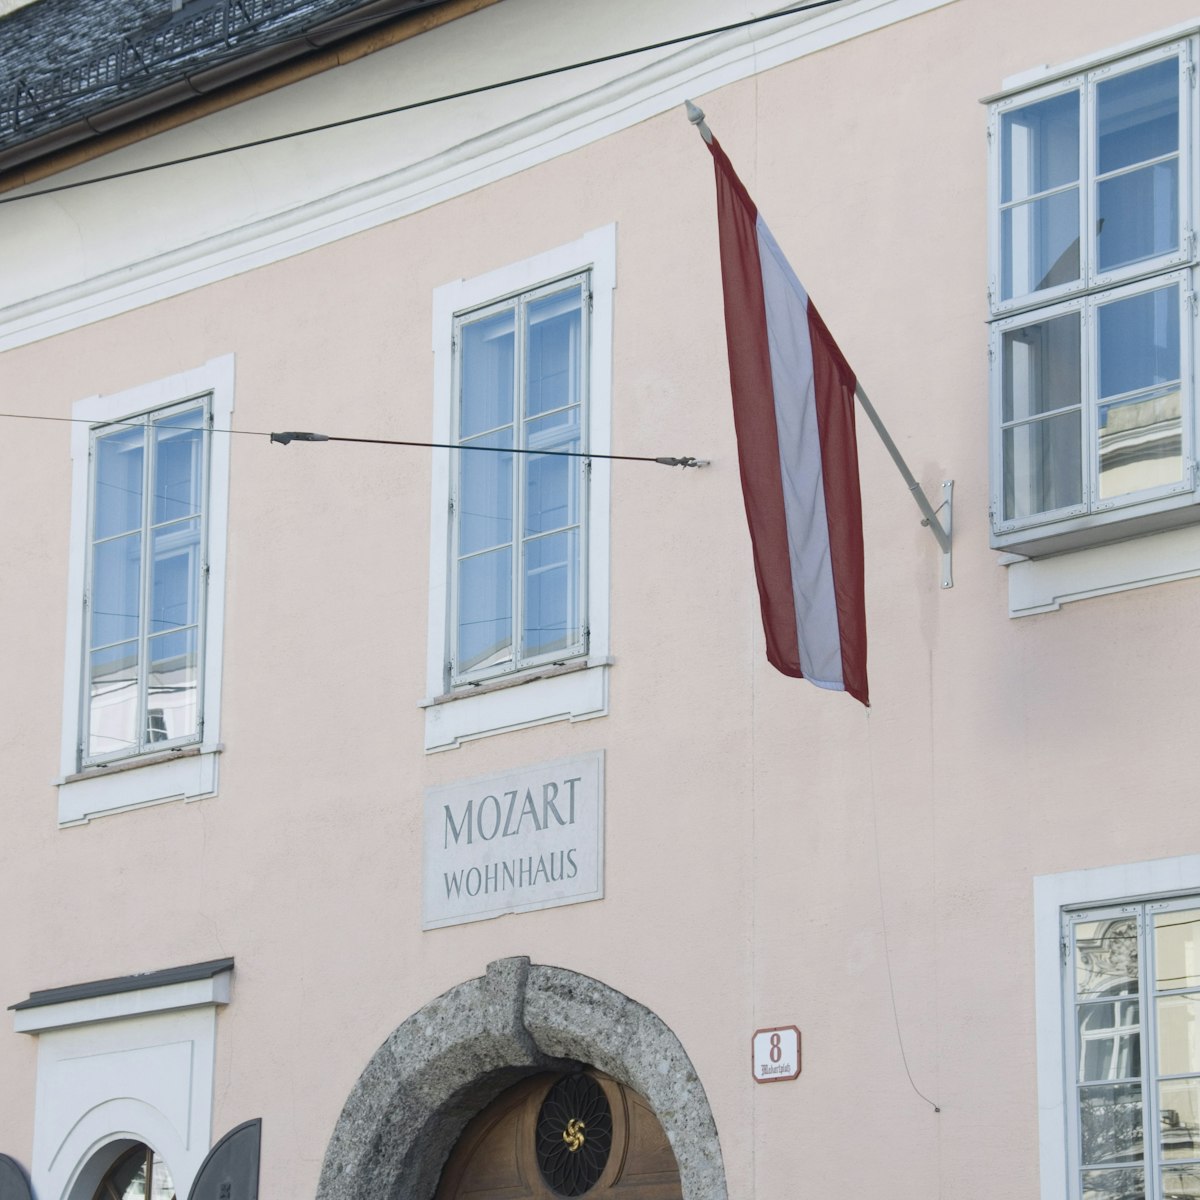 House where Mozart lived, now a museum, Salzburg, Austria, Europe